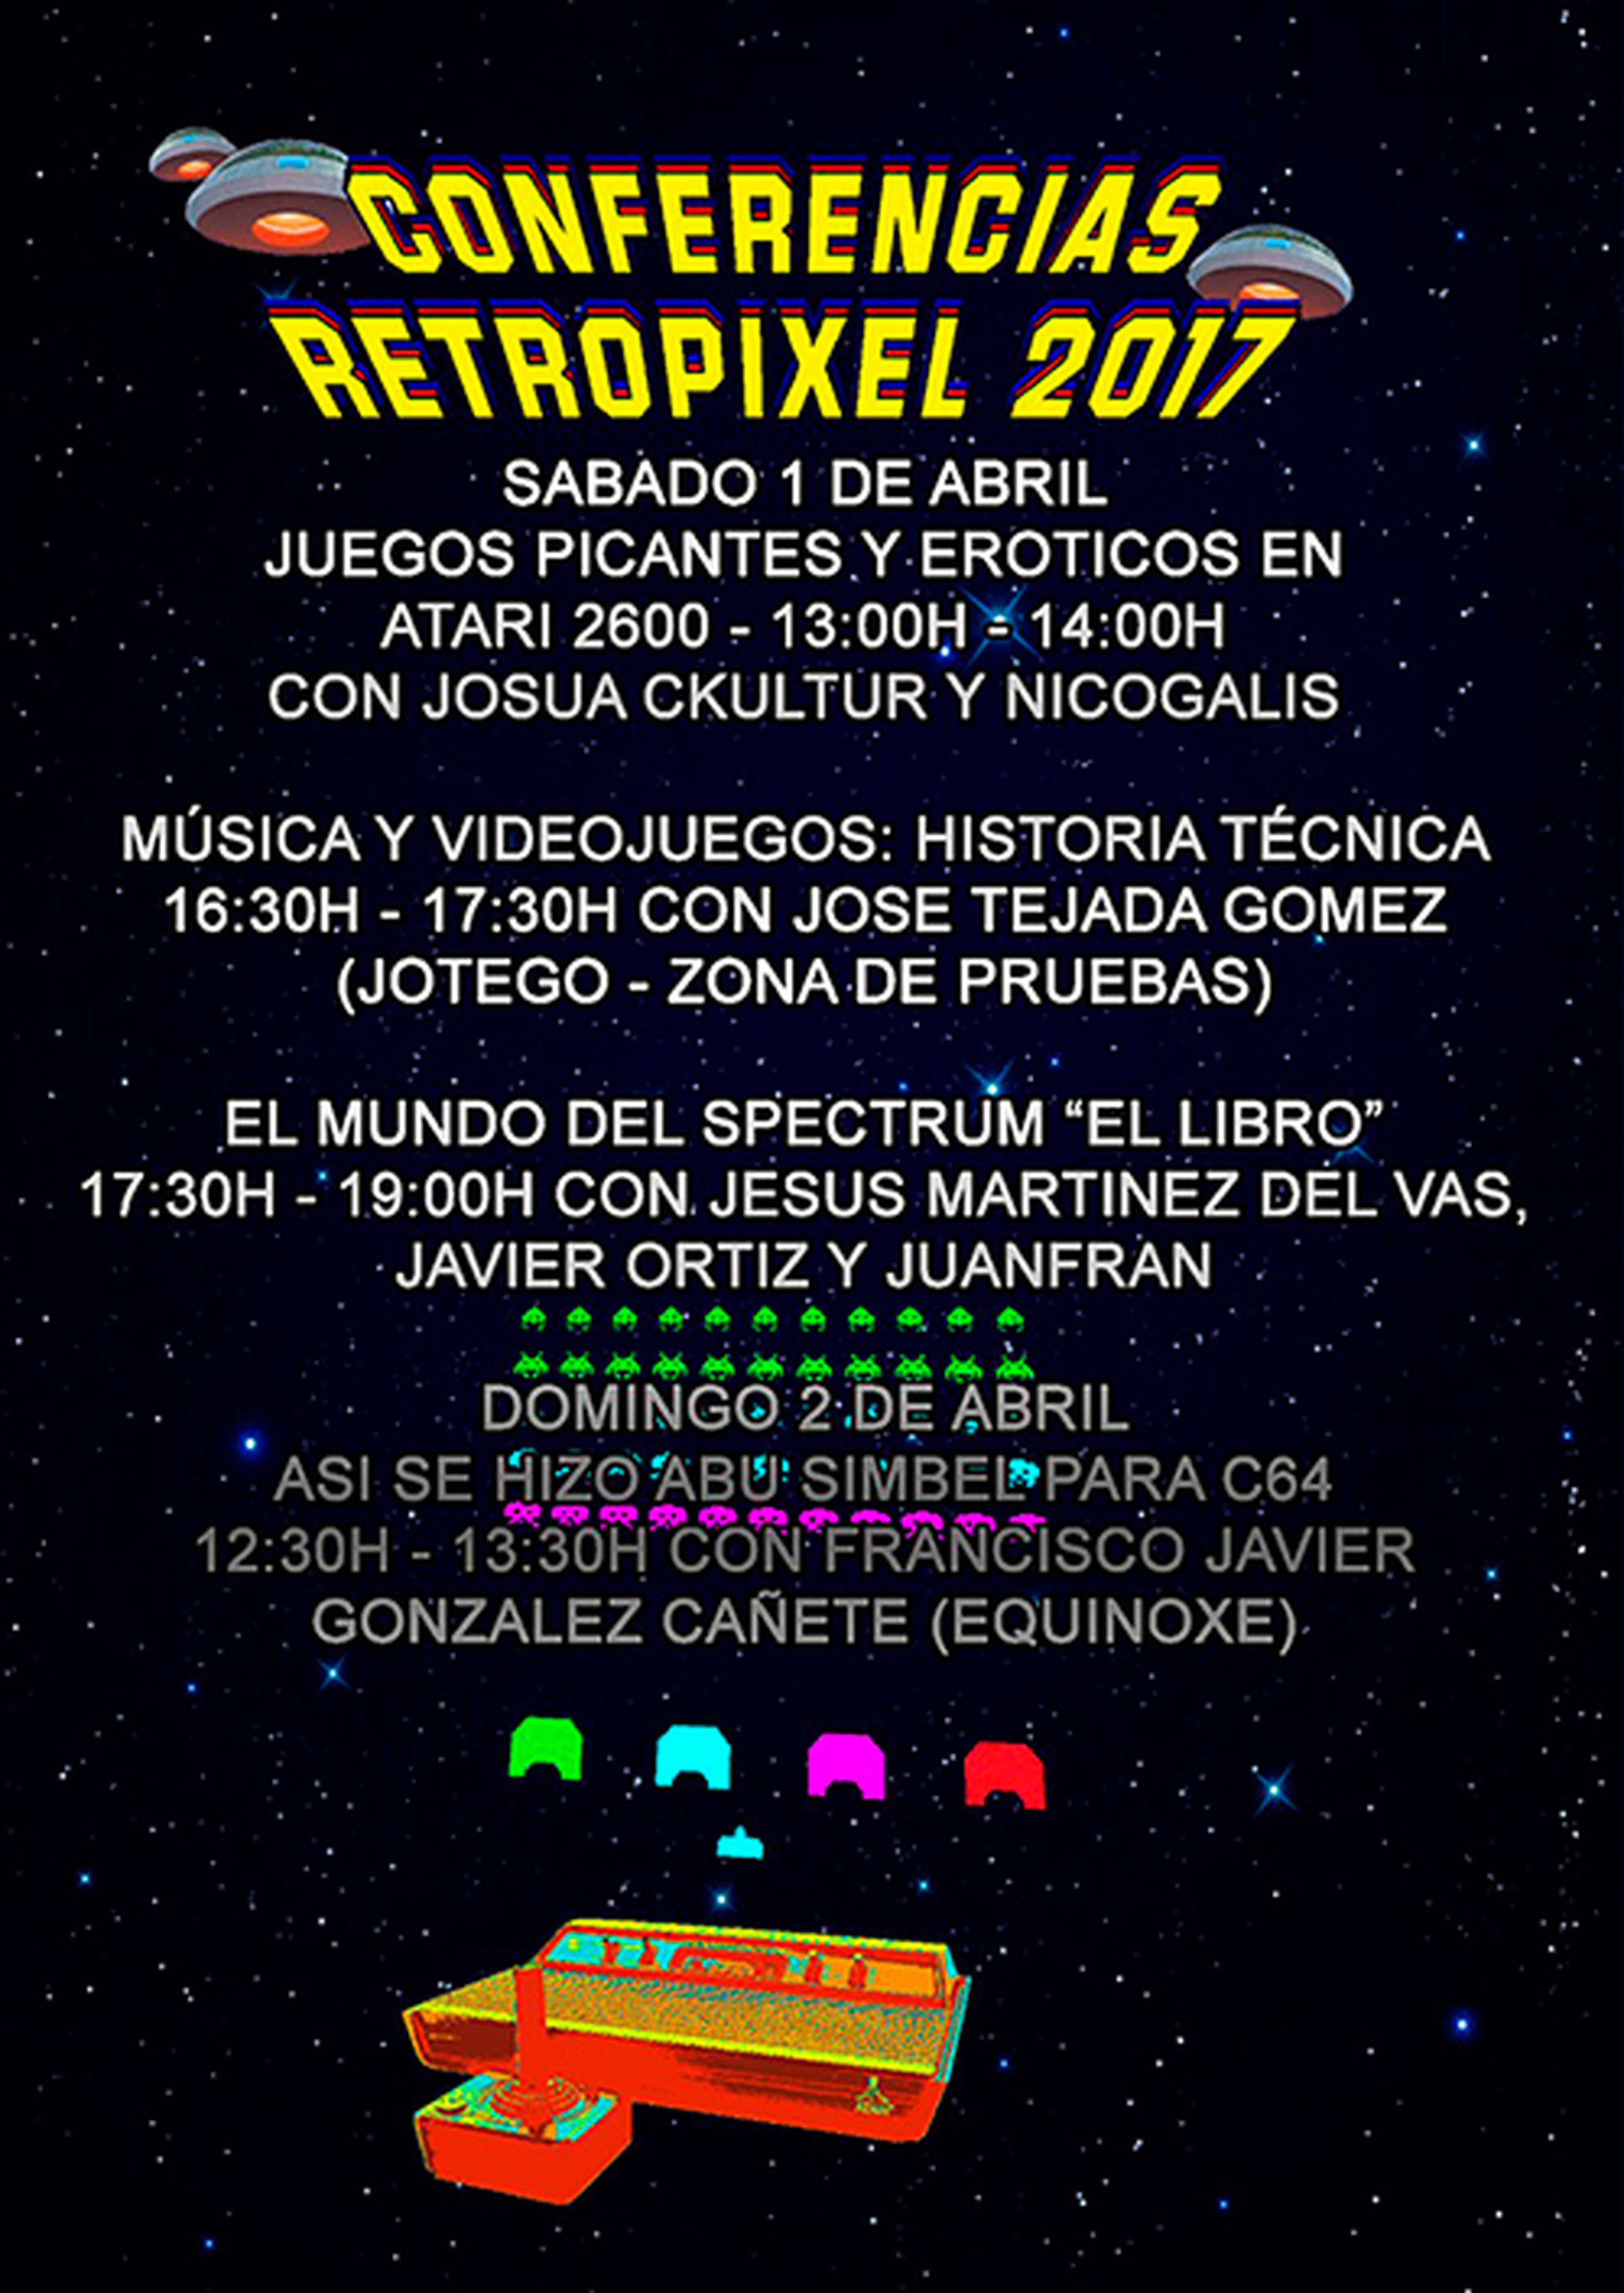 RetroPixel Málaga 2017 - Conferencias